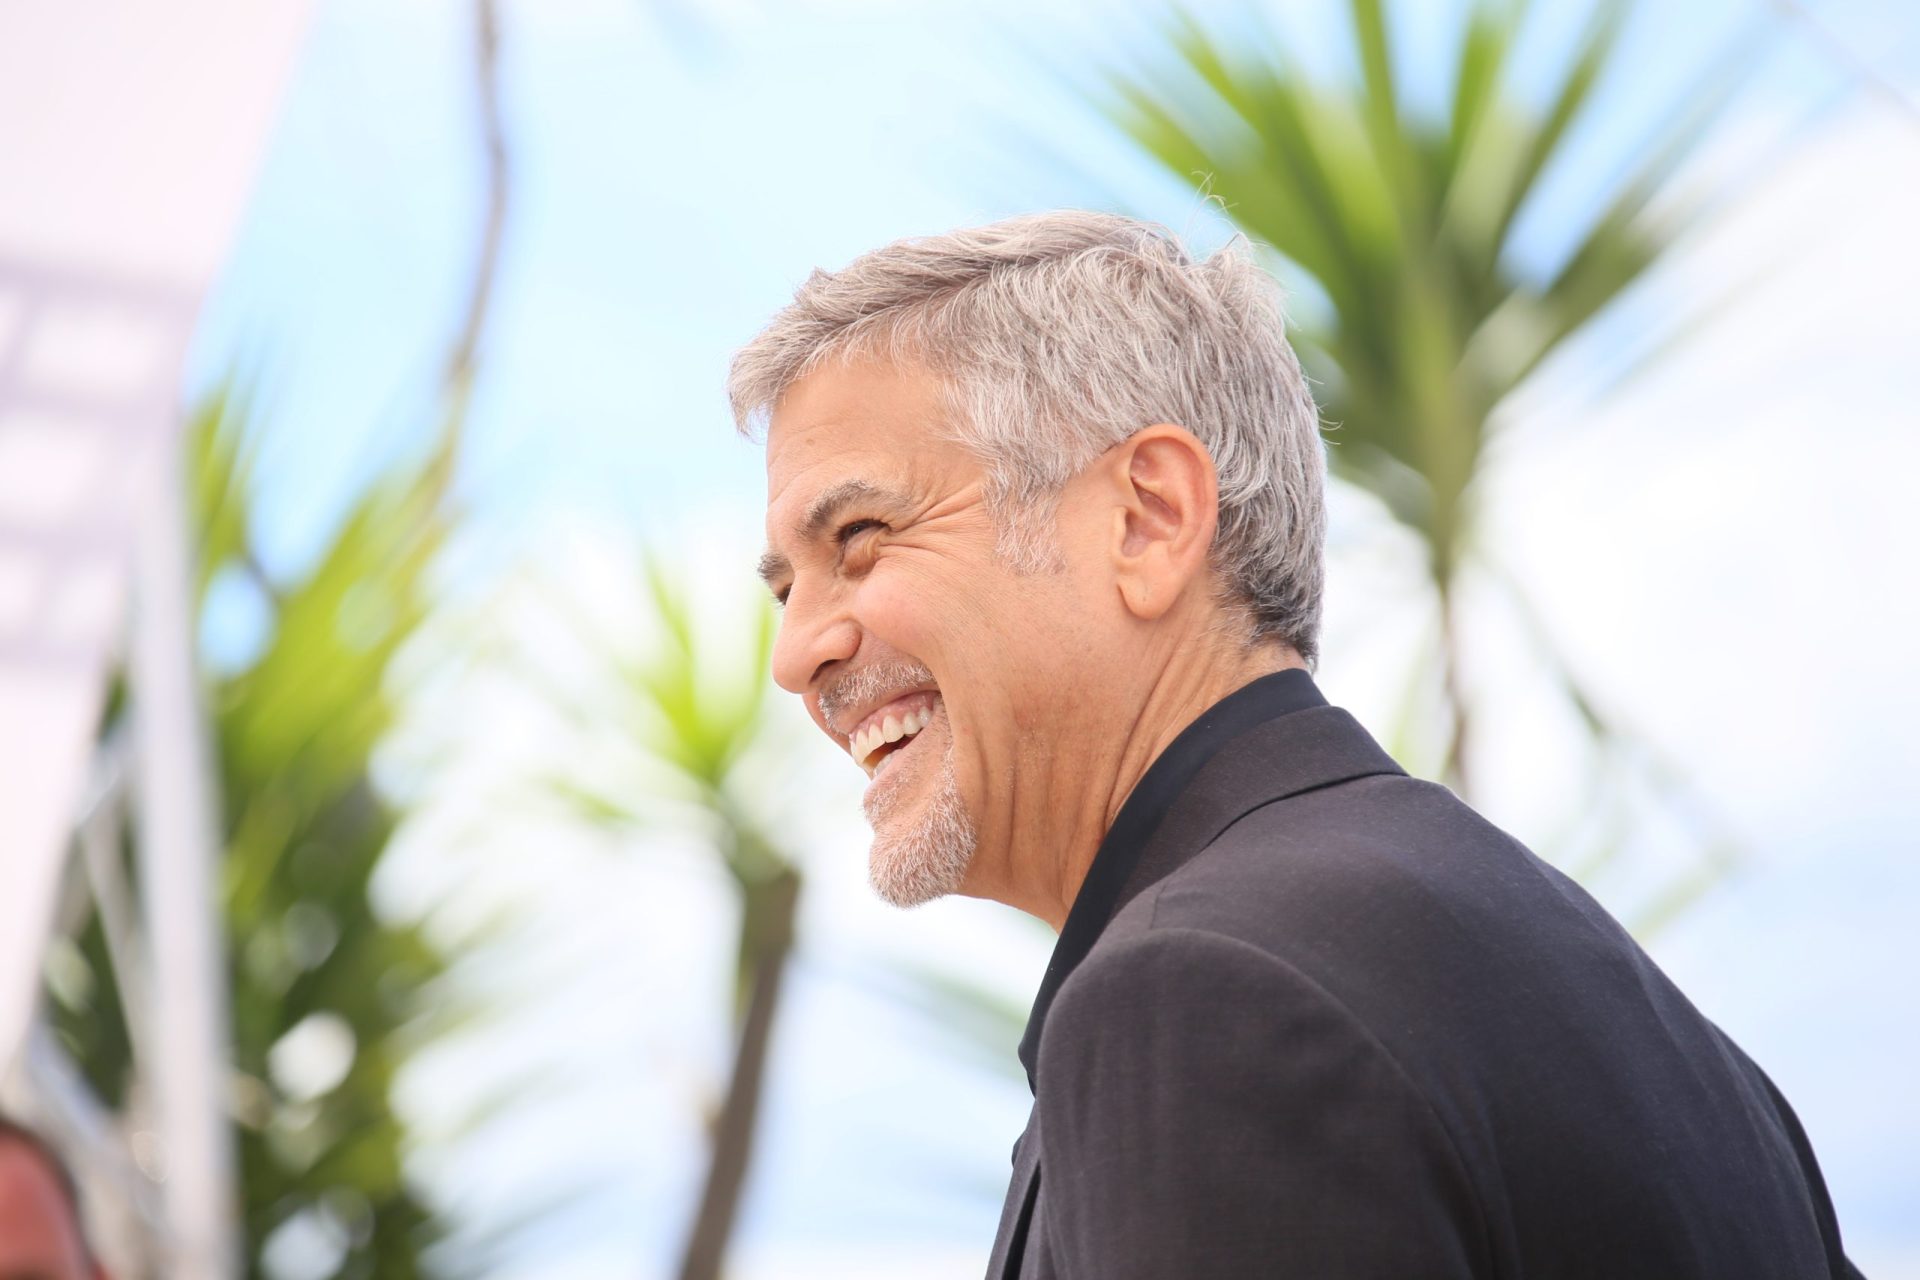 Mansão de luxo na zona da Comporta? George Clooney nega